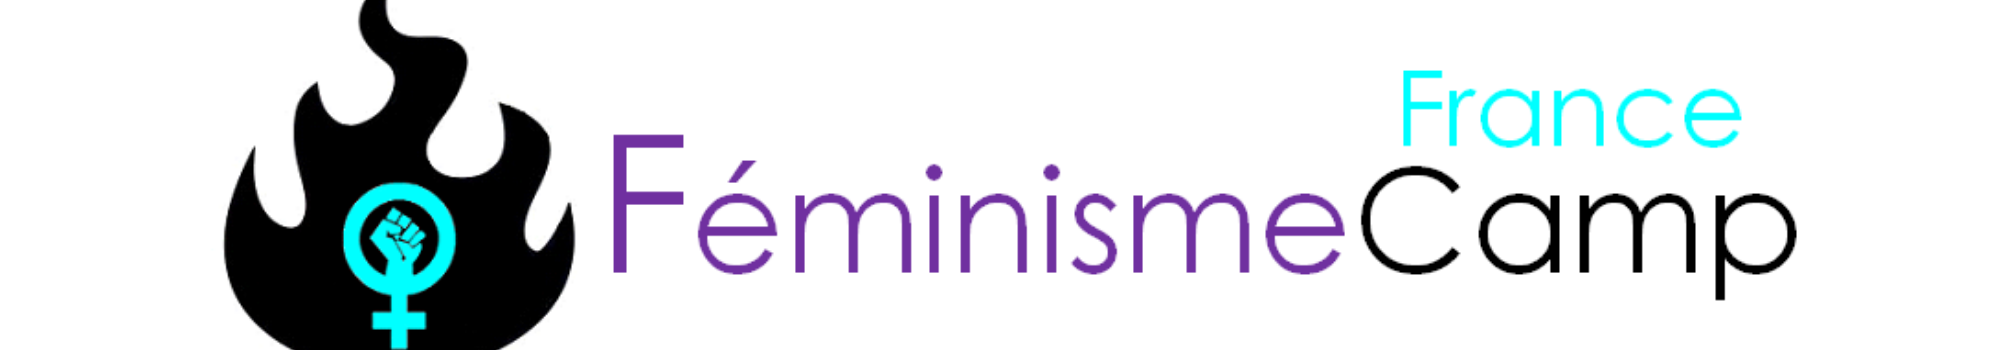 FéminismeCamp